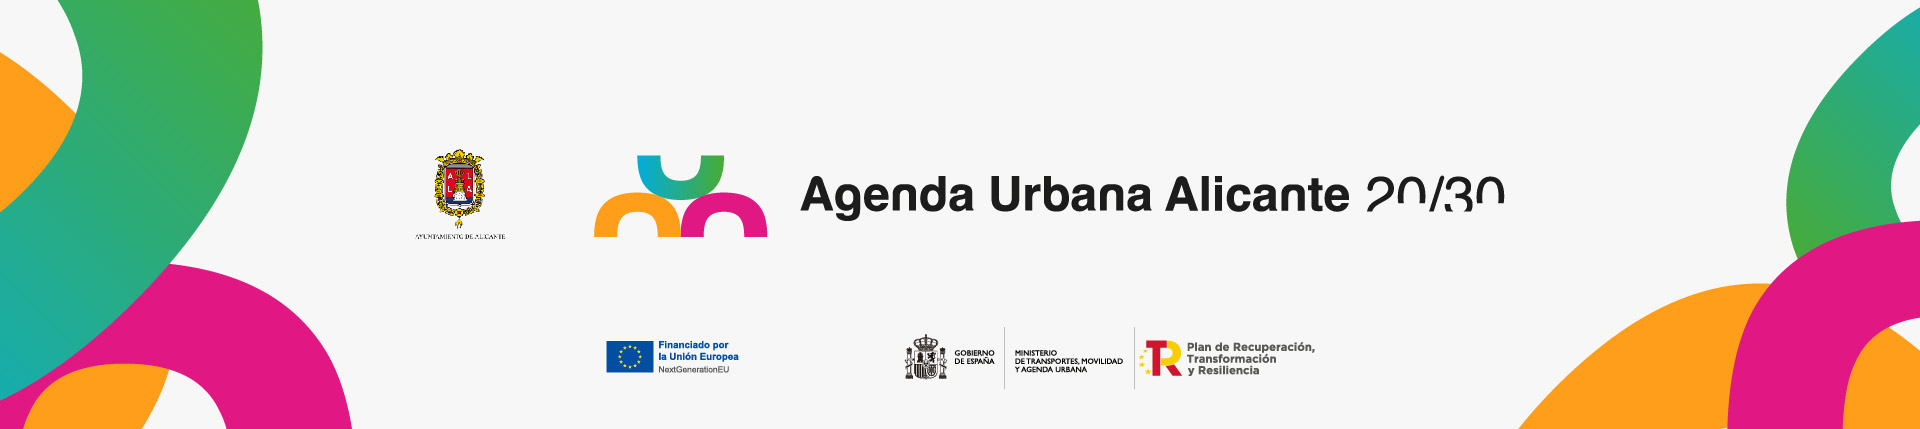 Agenda Urbana Alicante 20/30